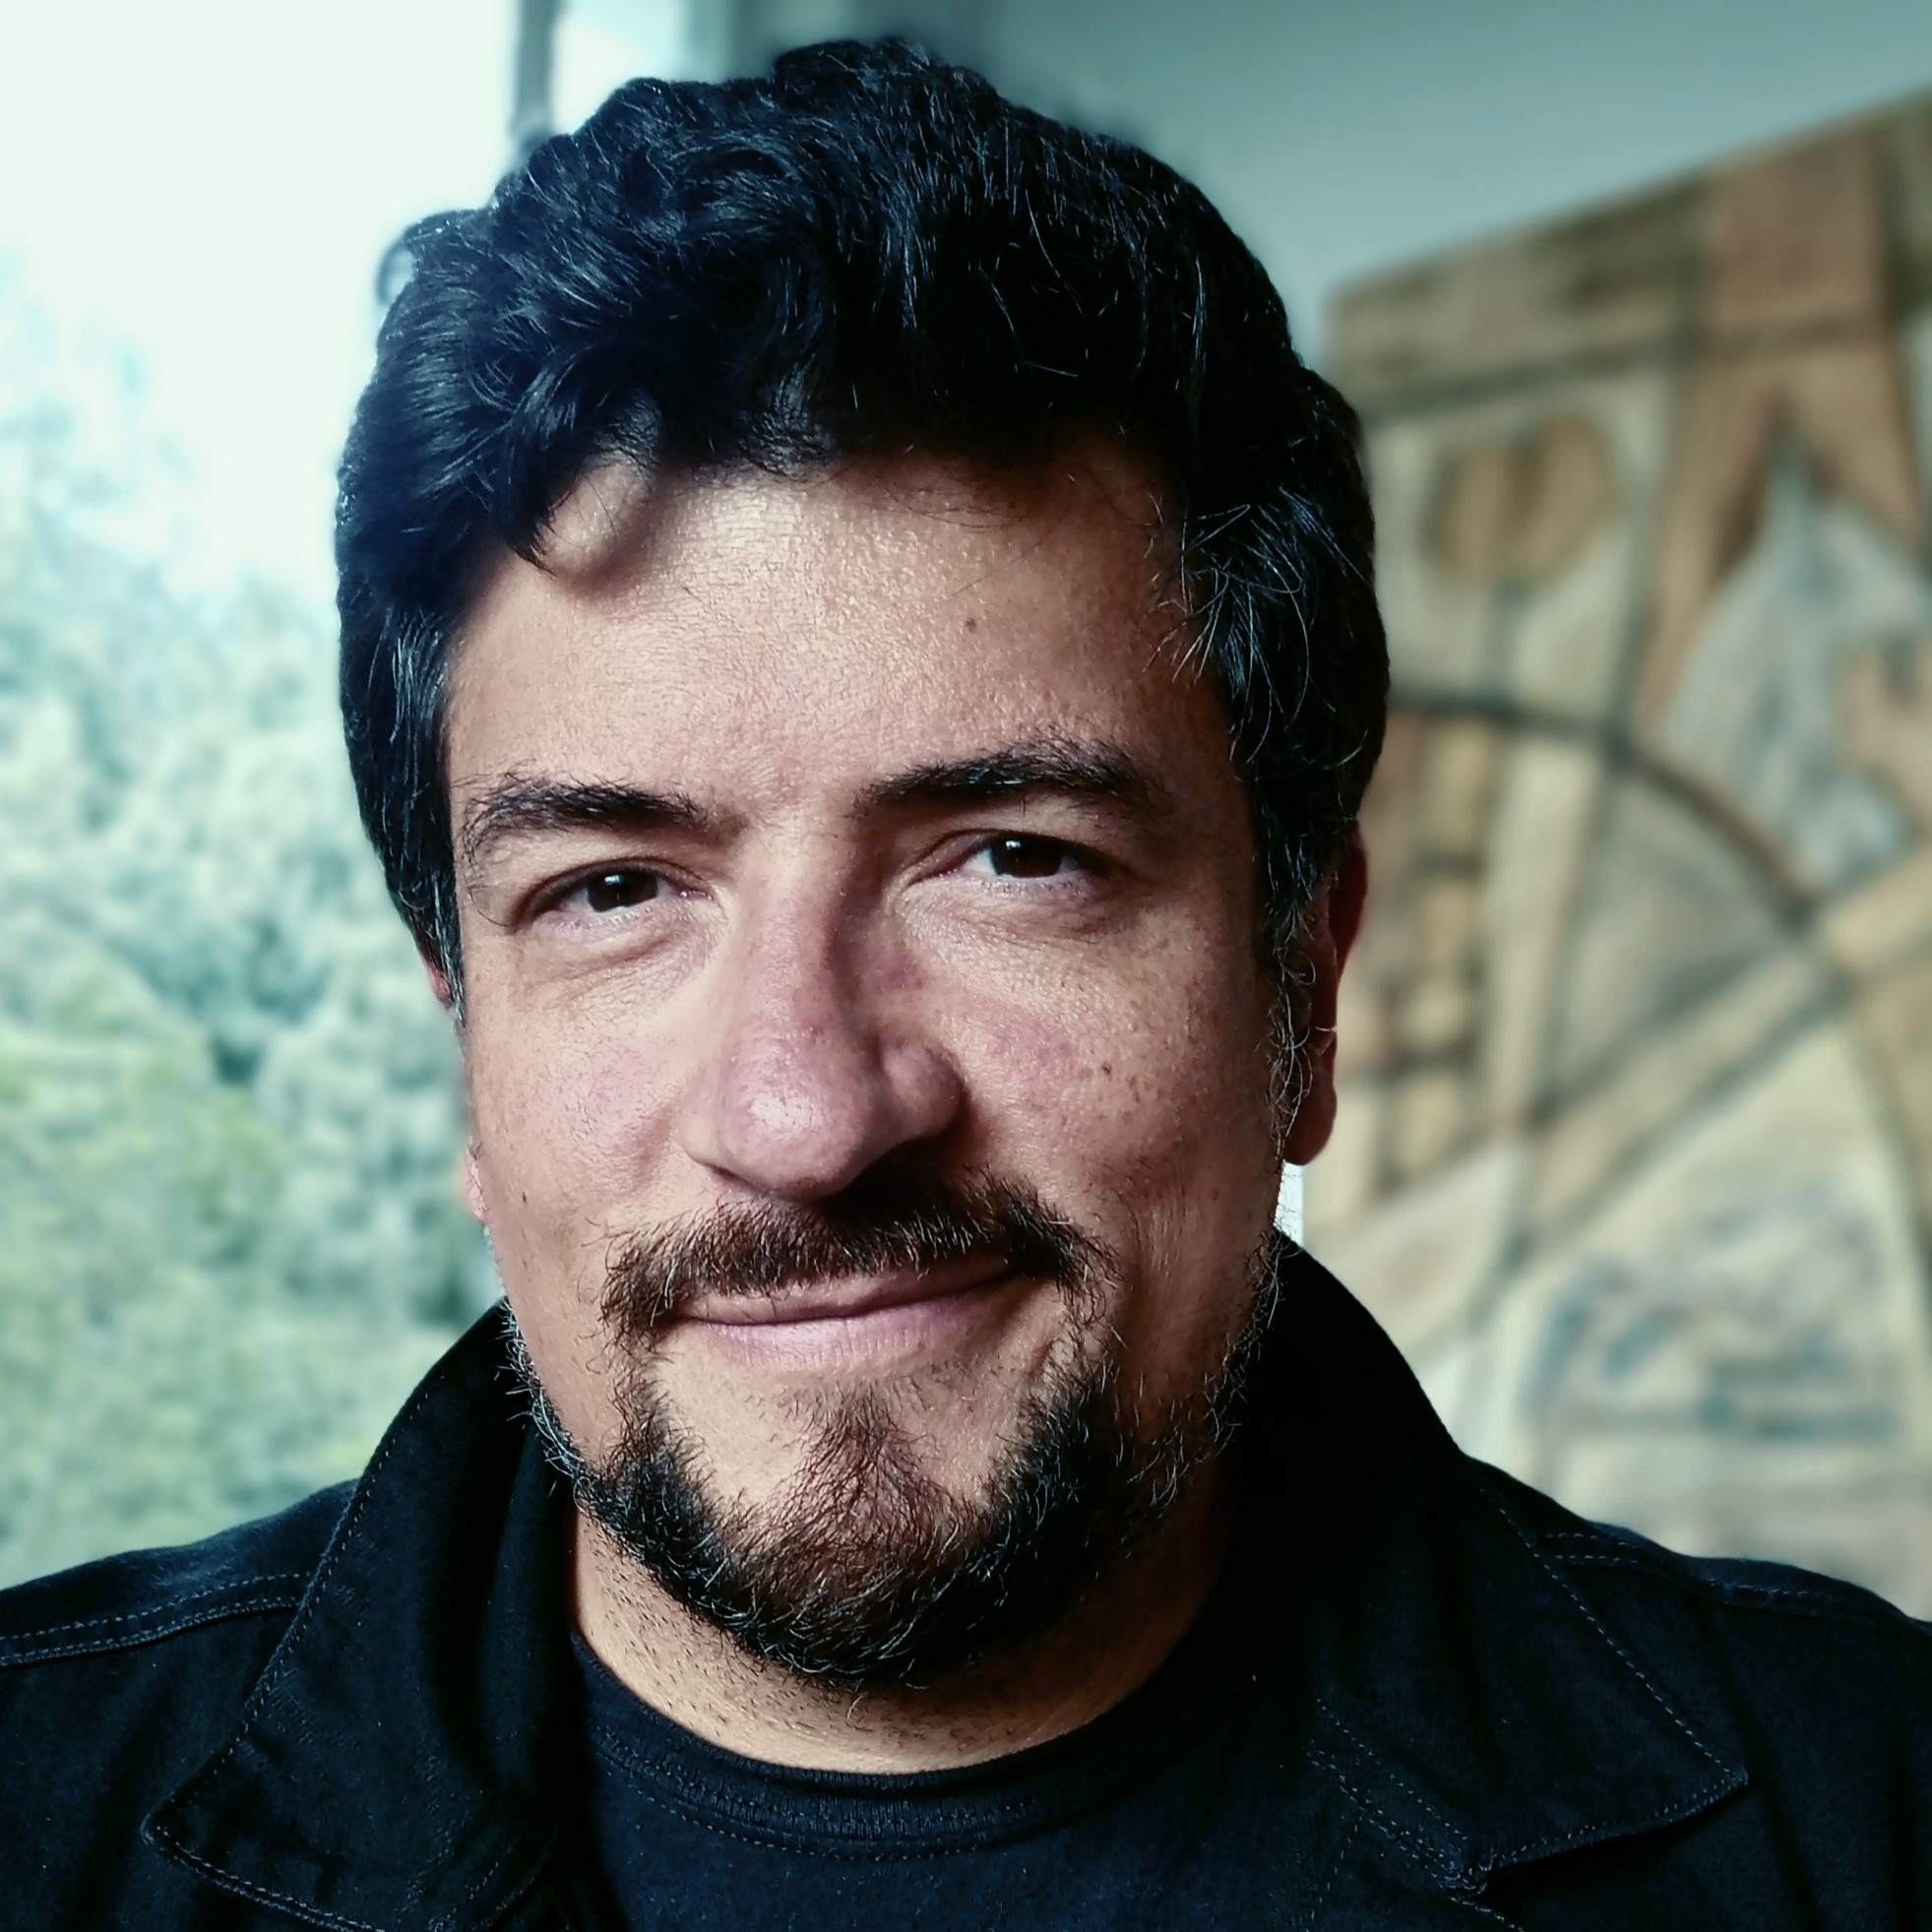 Pablo Guerra